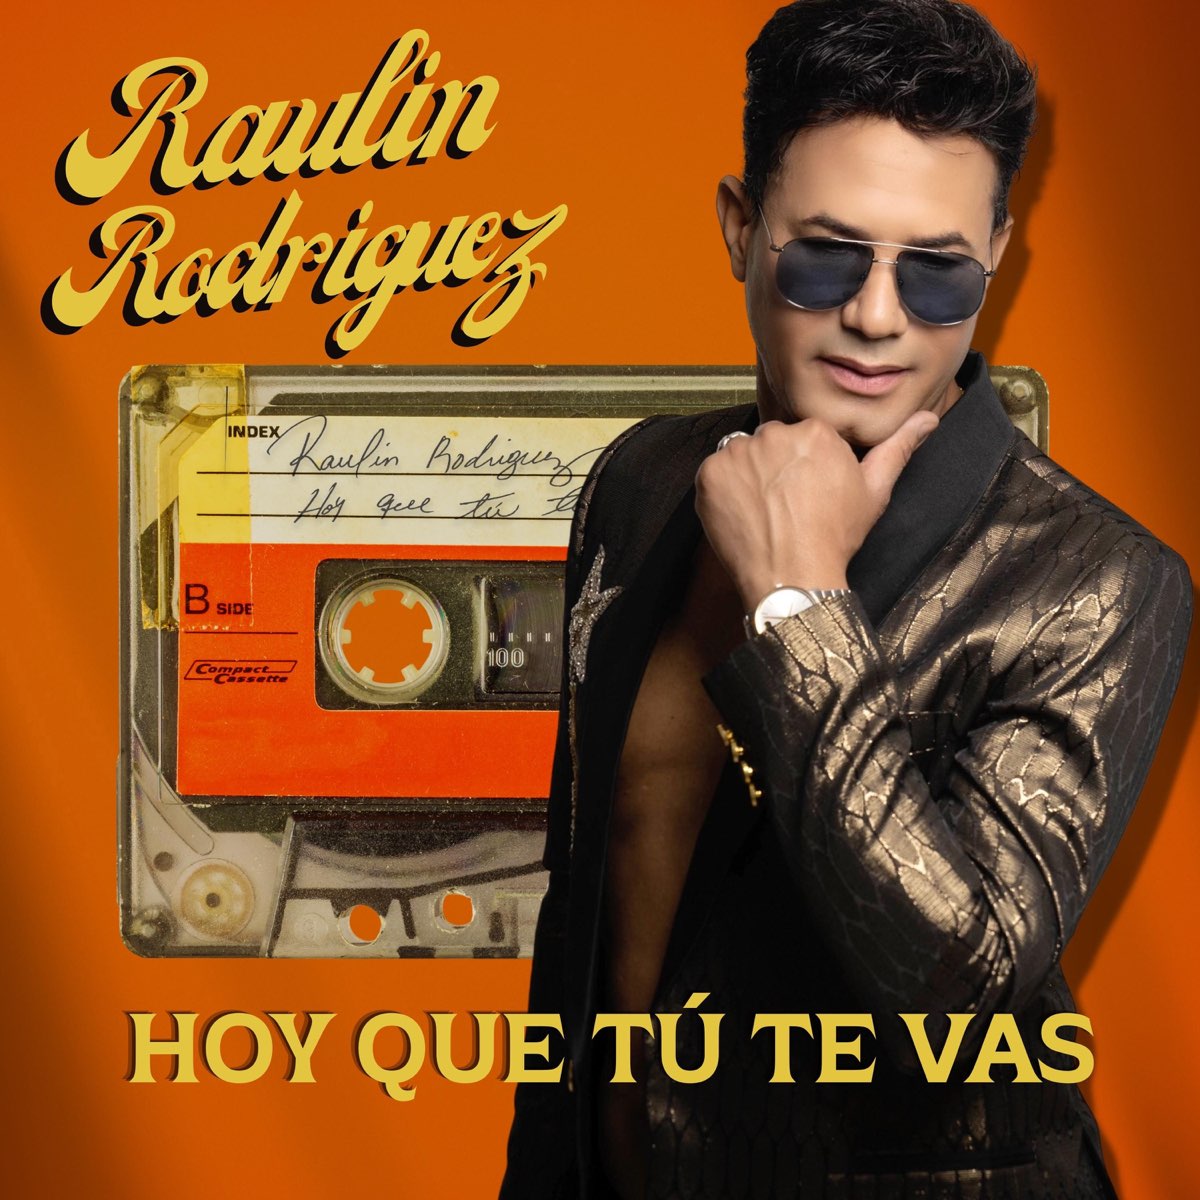 Hoy Que Tú Te Vas - Single de Raulin Rodriguez en Apple Music